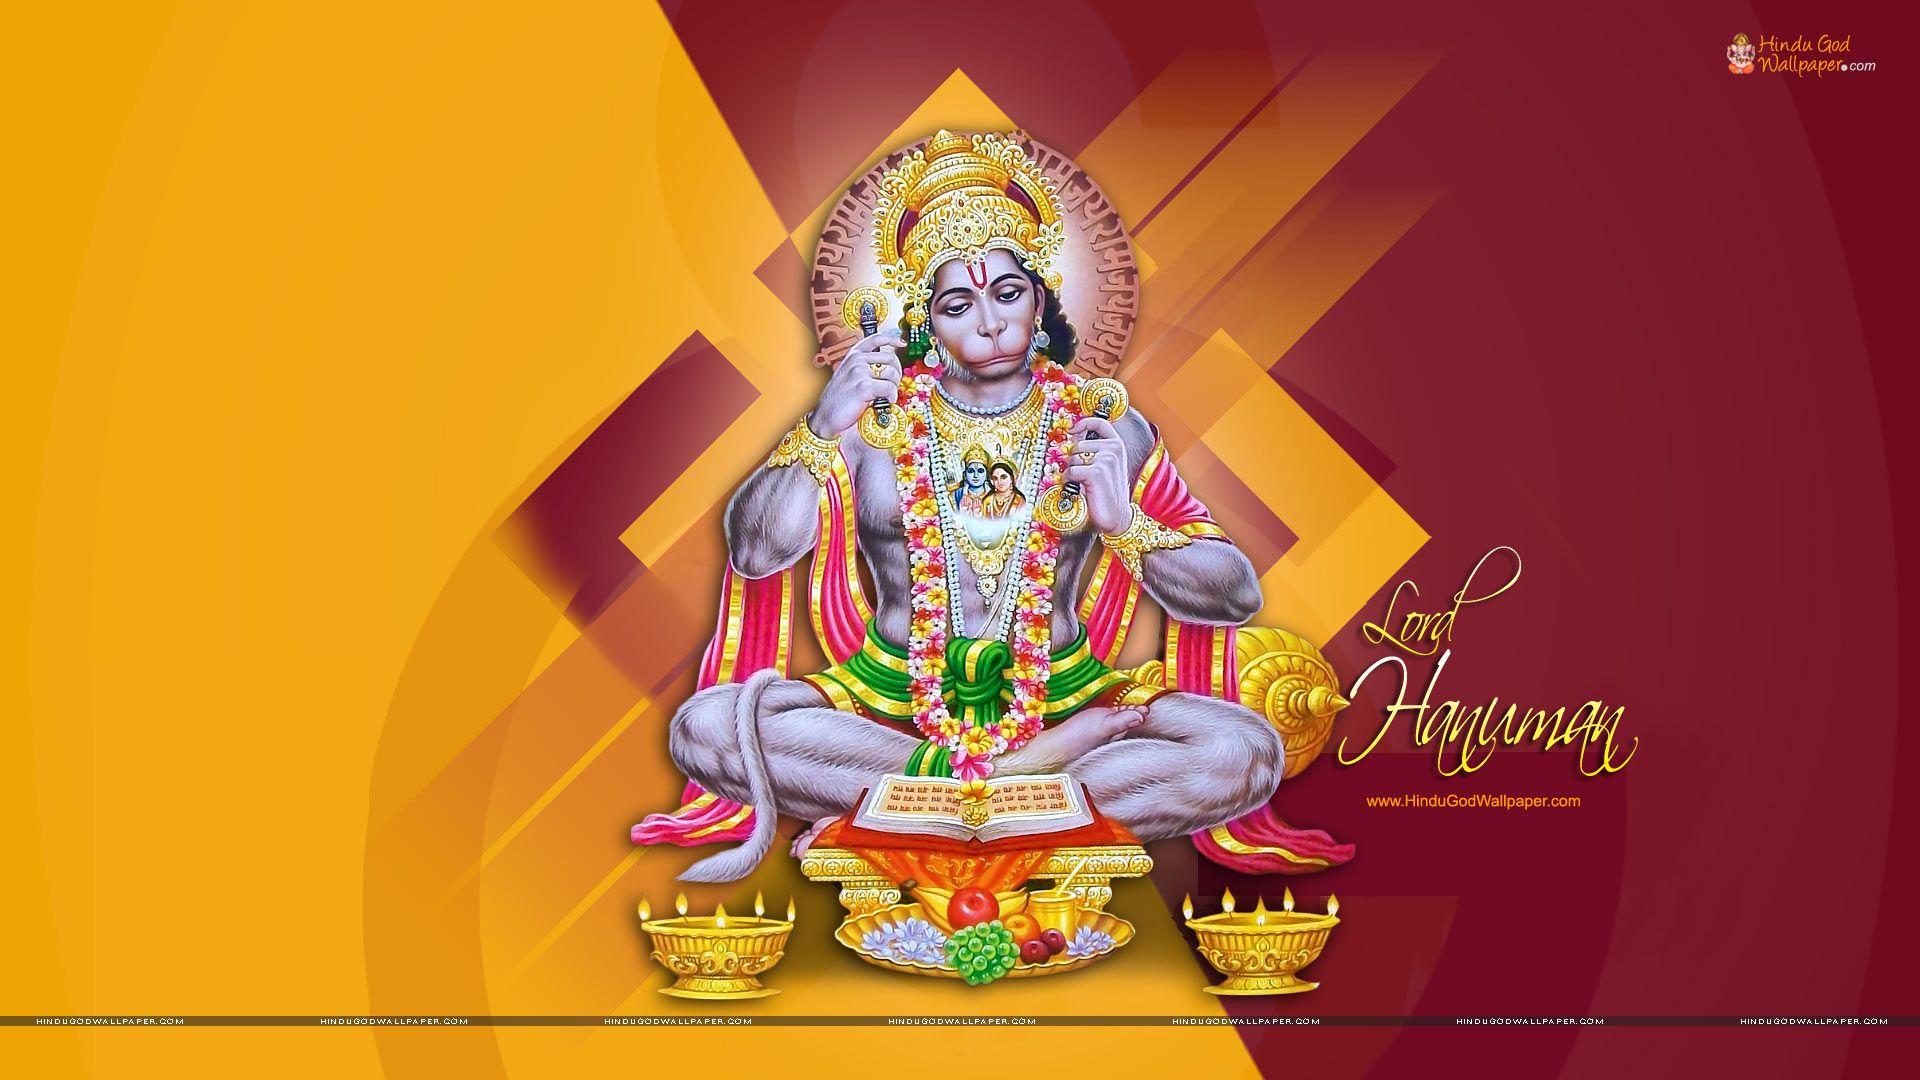 Lord Hanuman Ji HD Wallpaper Full Size Download. Lord Hanuman